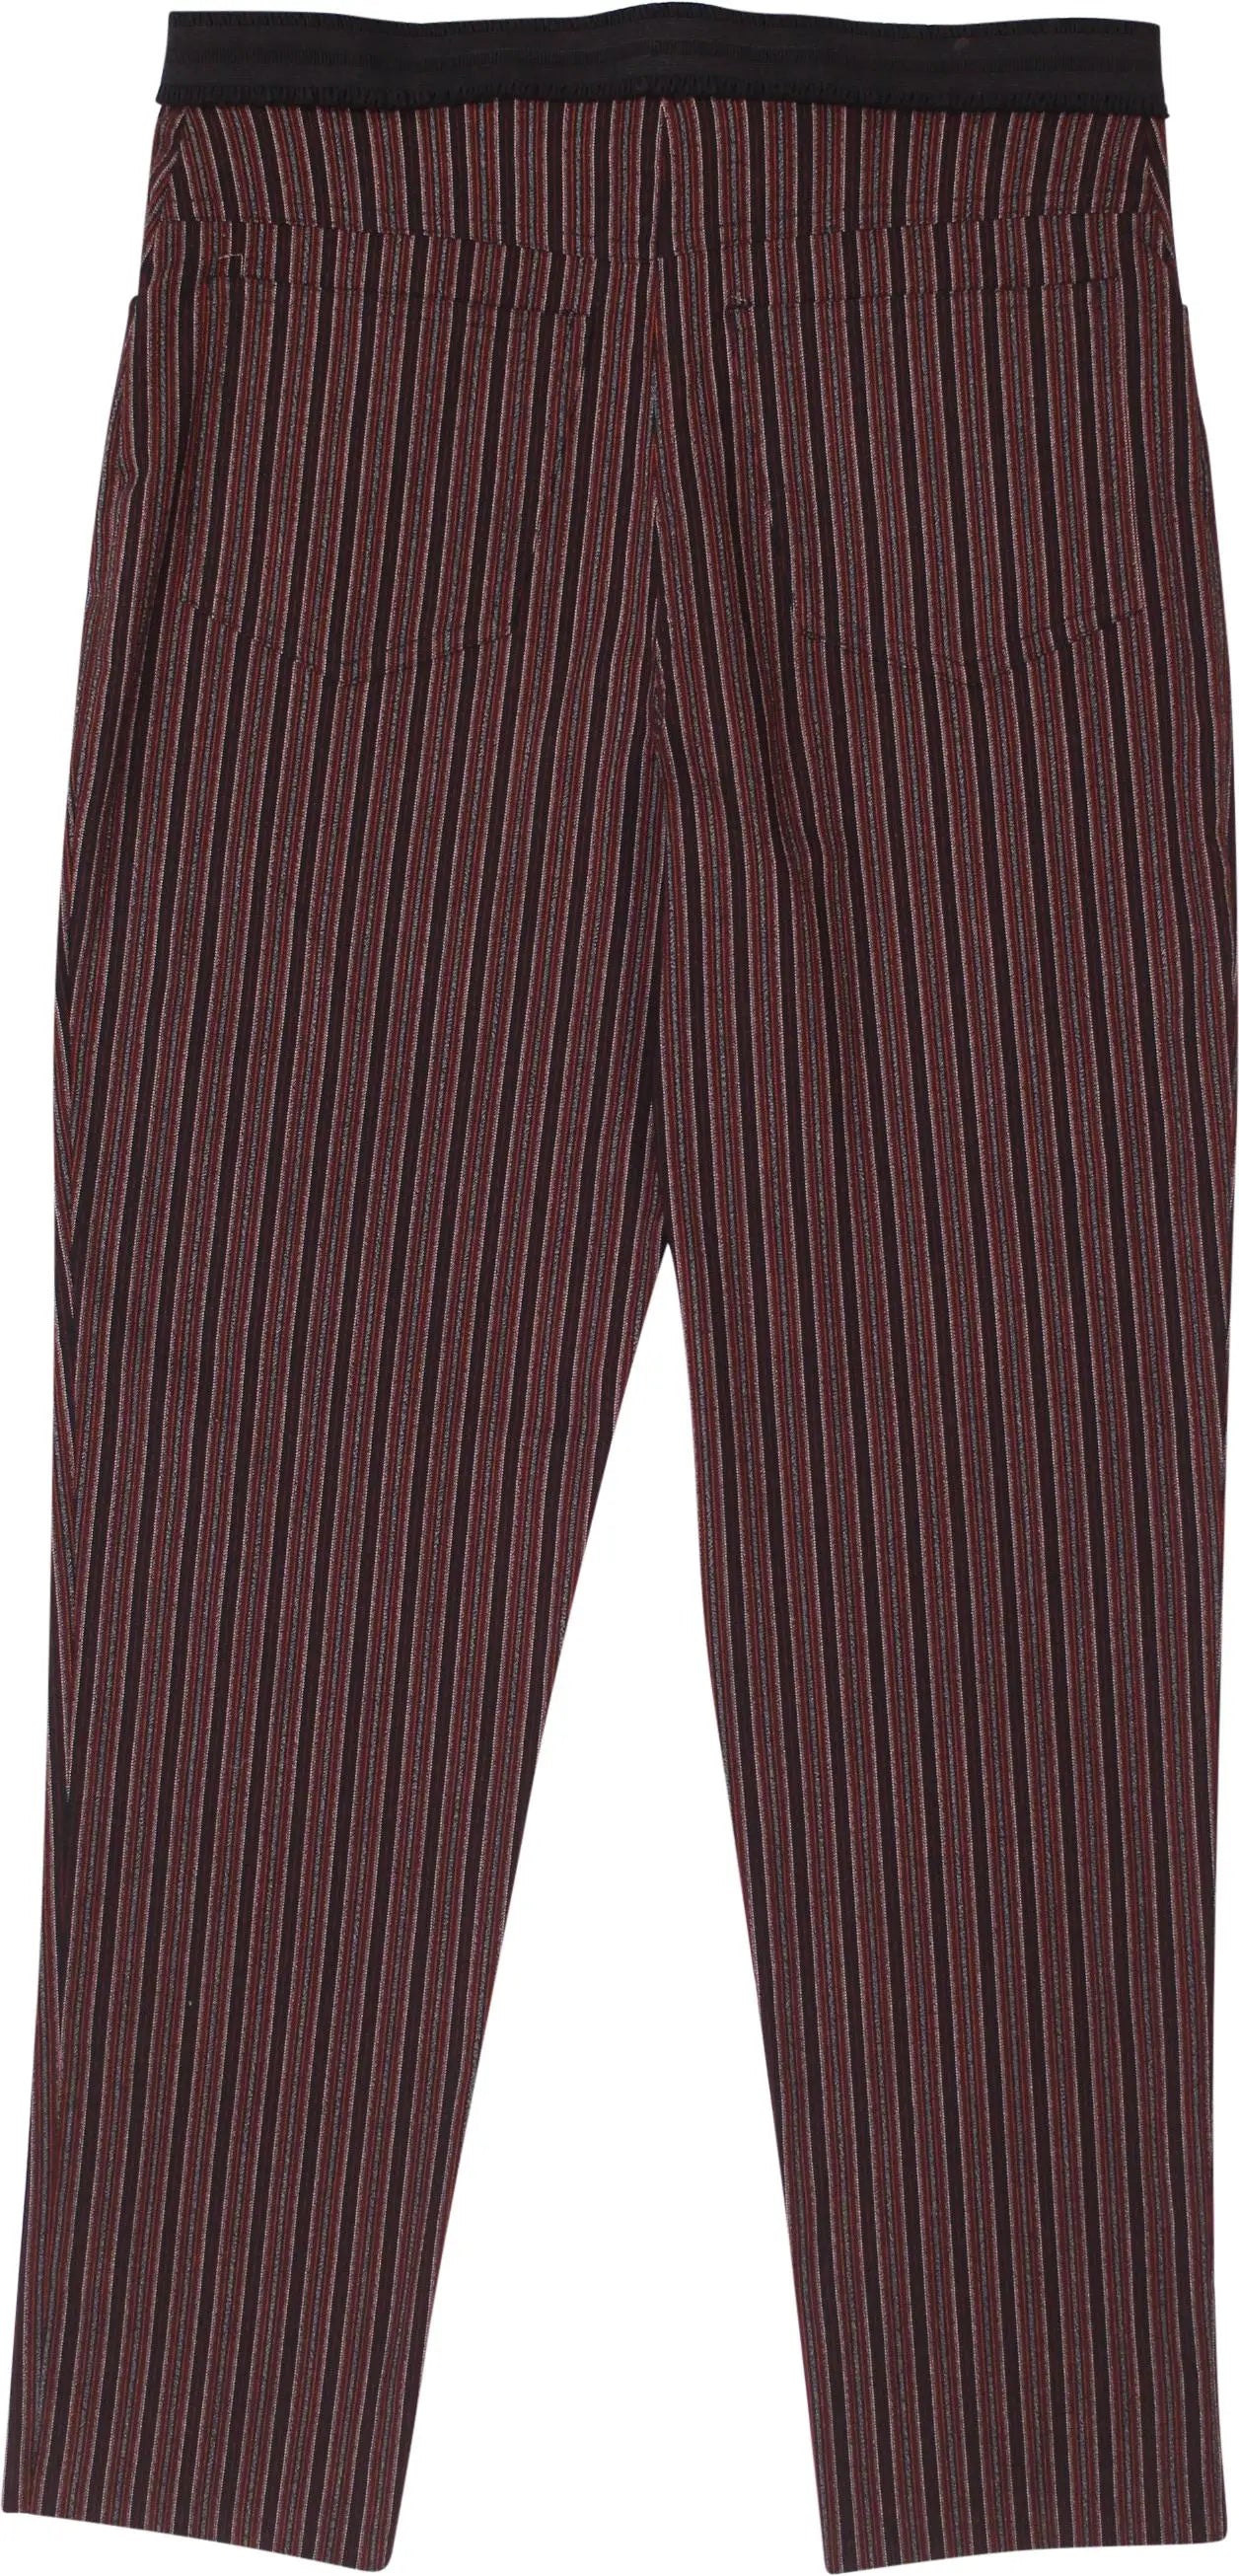 Naf Naf - Striped Pants by Naf Naf- ThriftTale.com - Vintage and second handclothing